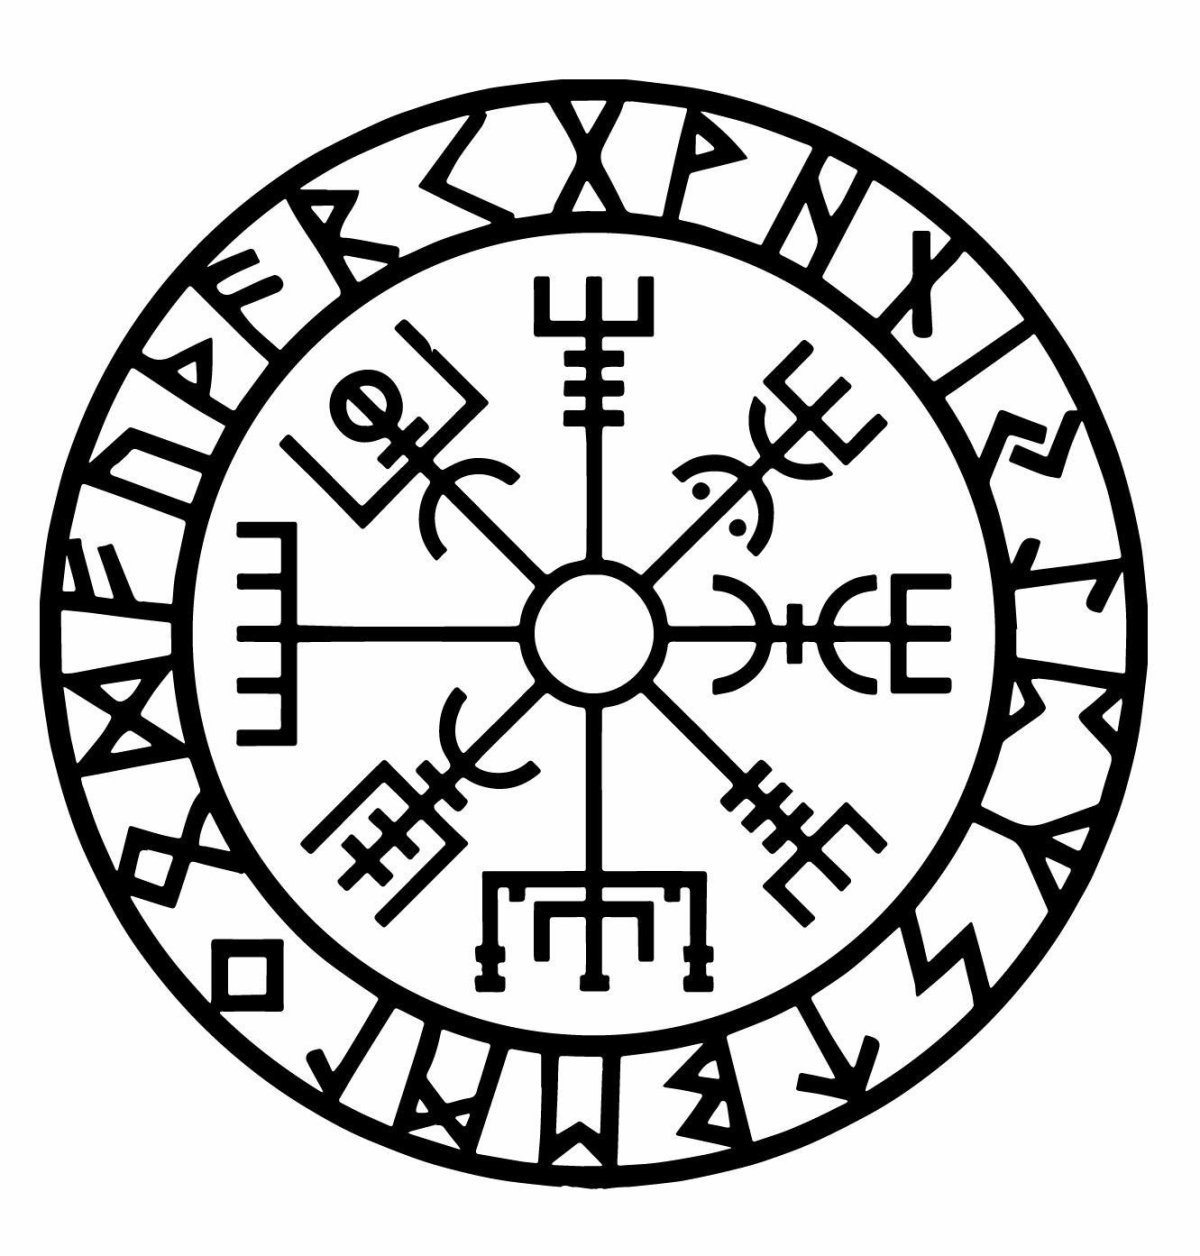 Ruins circle symbol tattoo